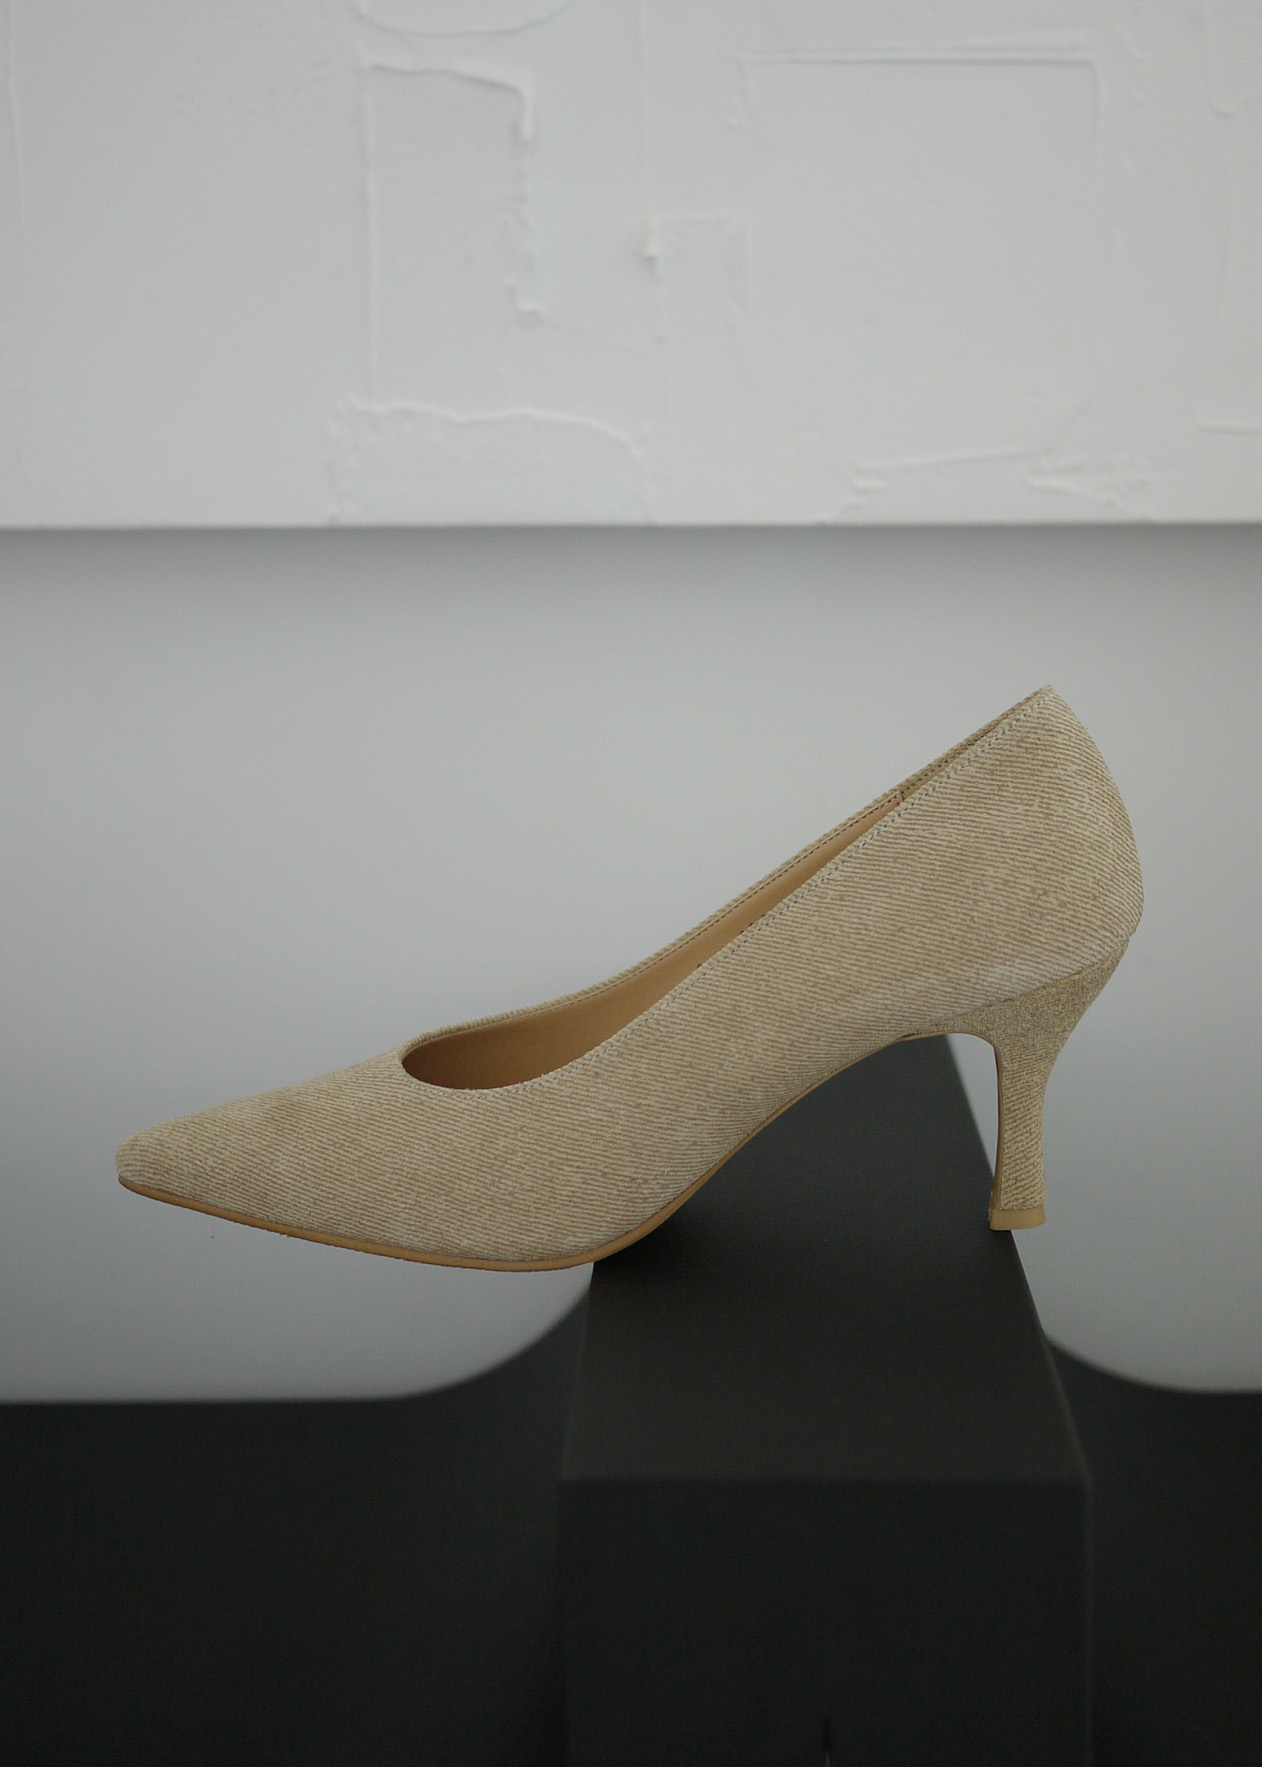 Under stiletto heels (7cm)